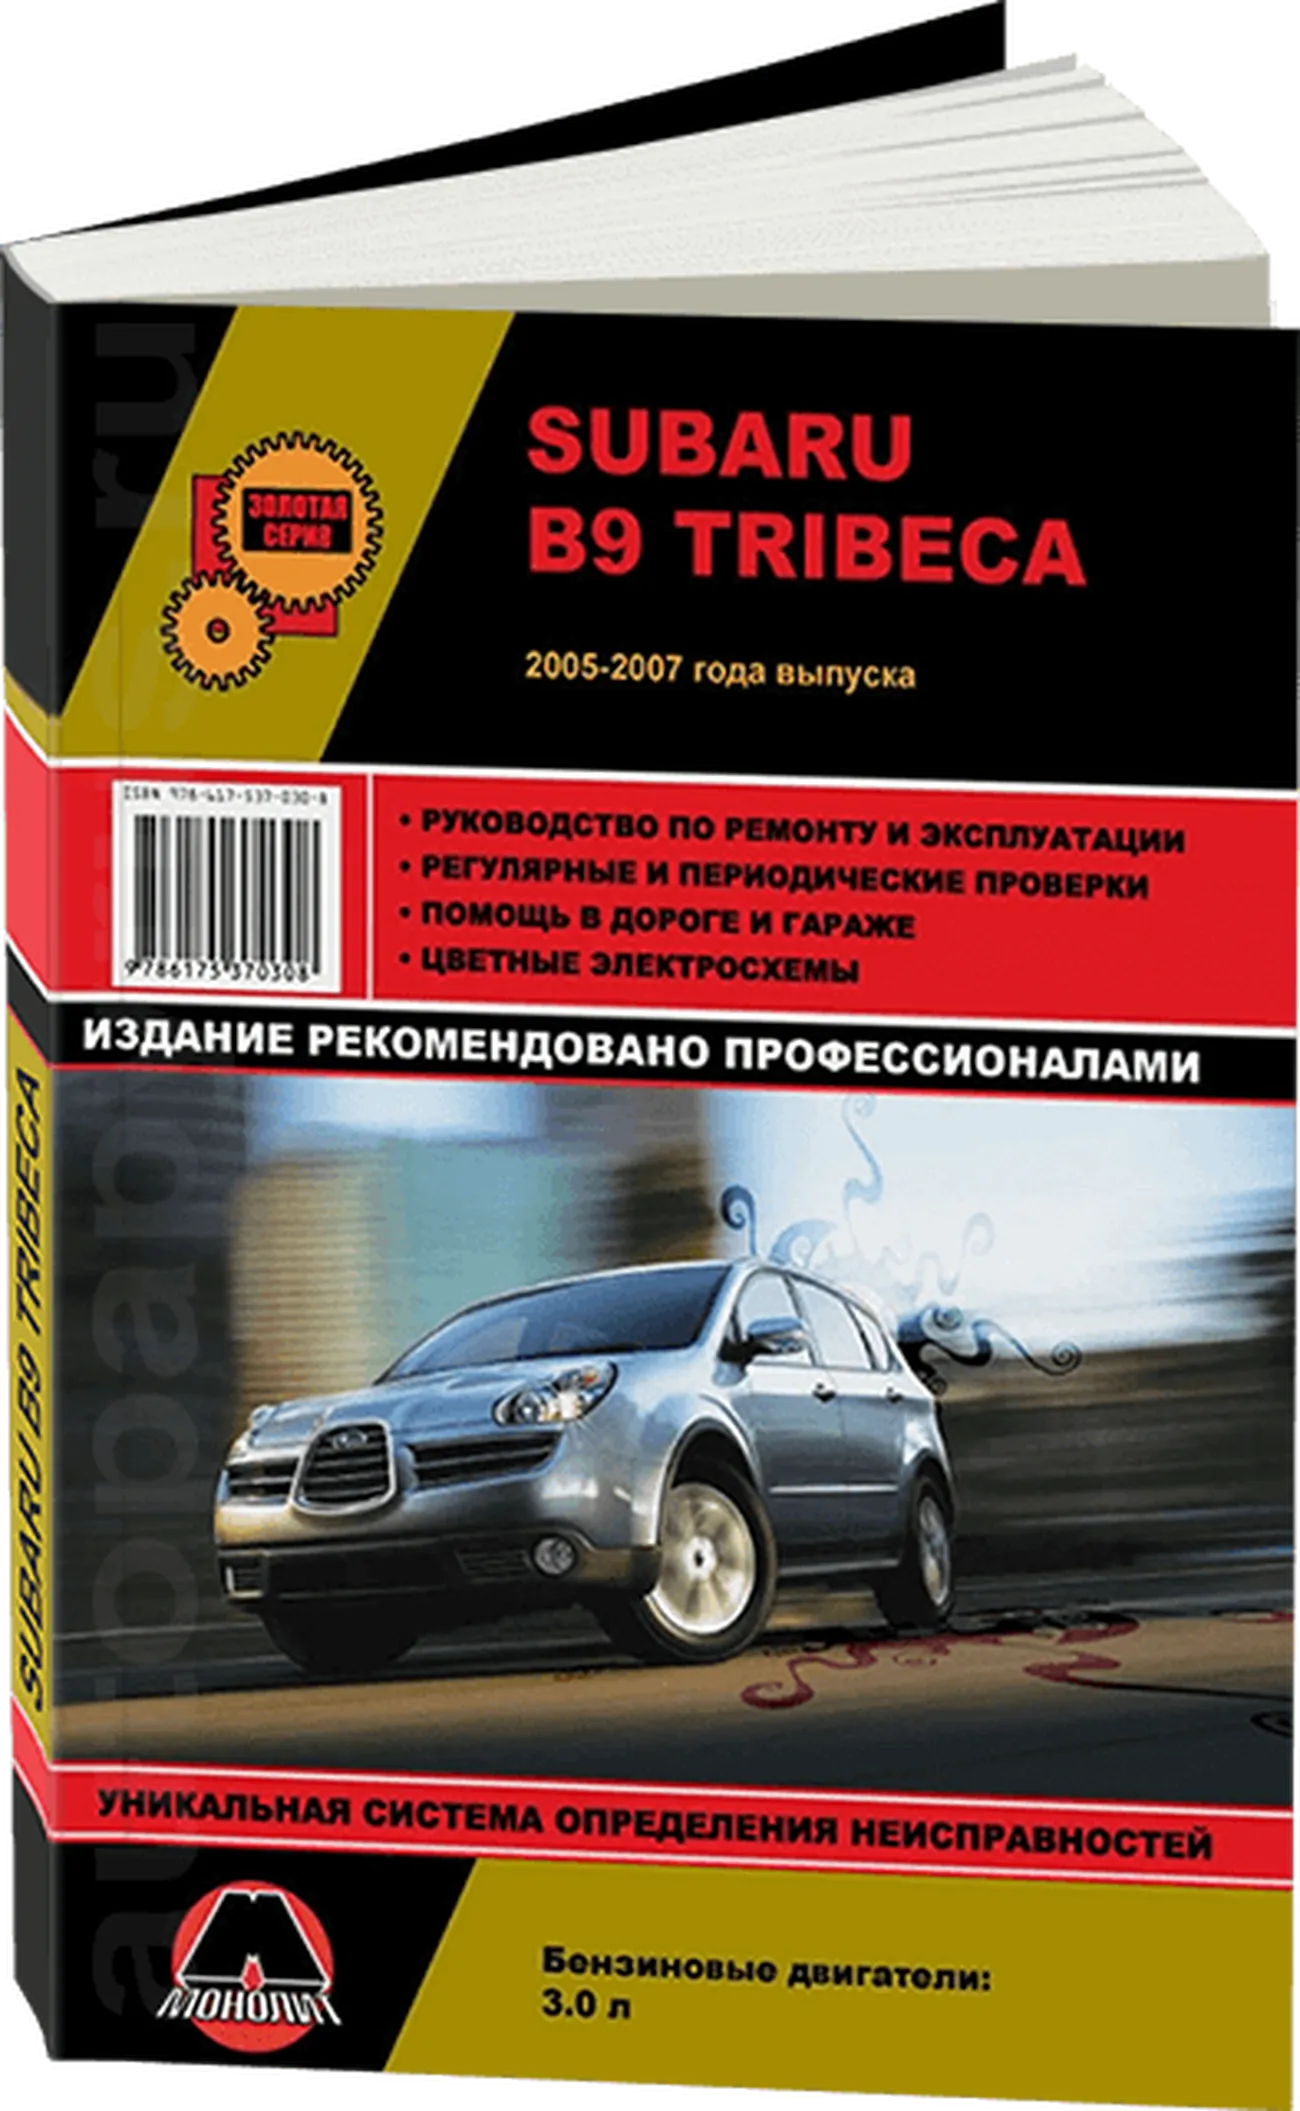 Книга: SUBARU TRIBECA B9 (б) 2005-2007 г.в., рем., экспл., то, сер. ЗС | Монолит